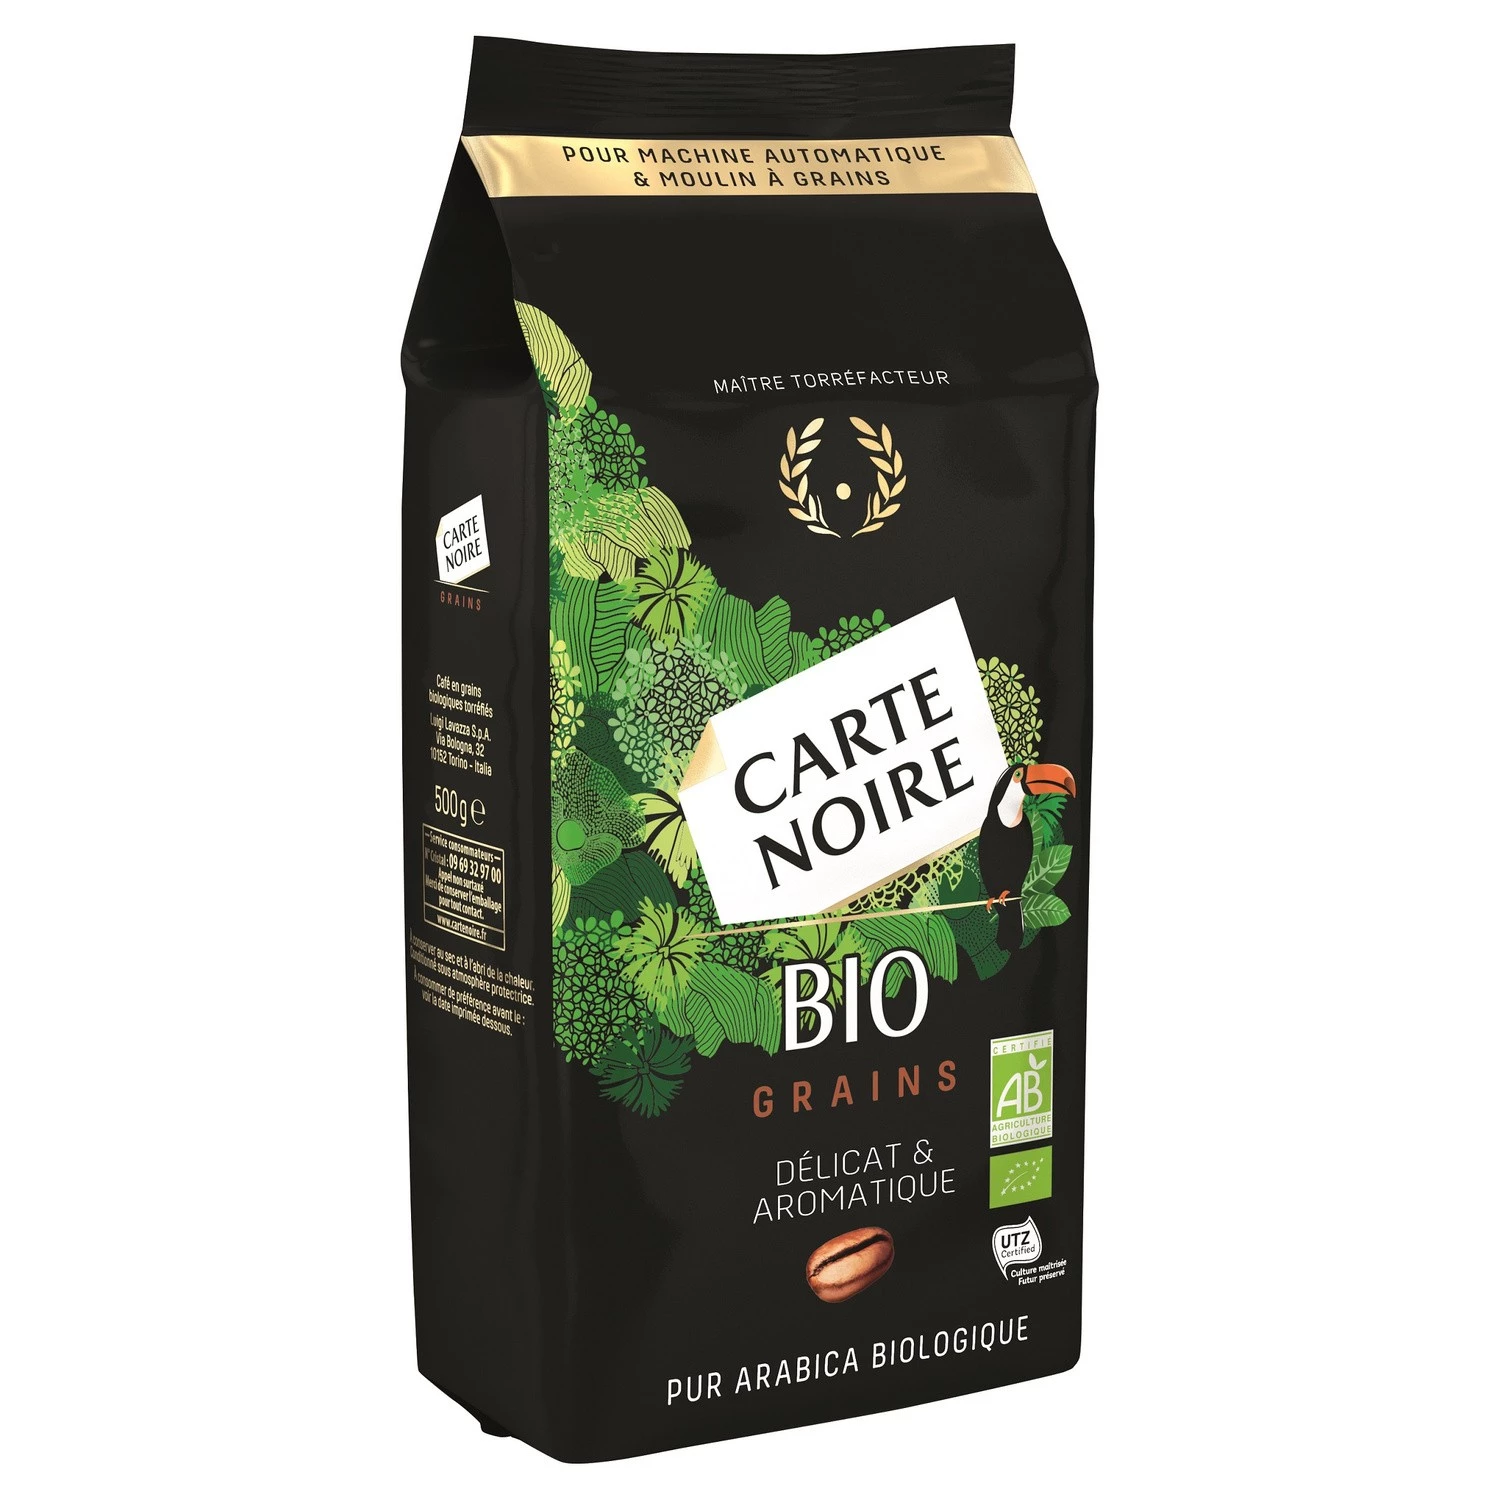 Café orgánico en granos delicados y aromáticos 500g - CARTE NOIRE